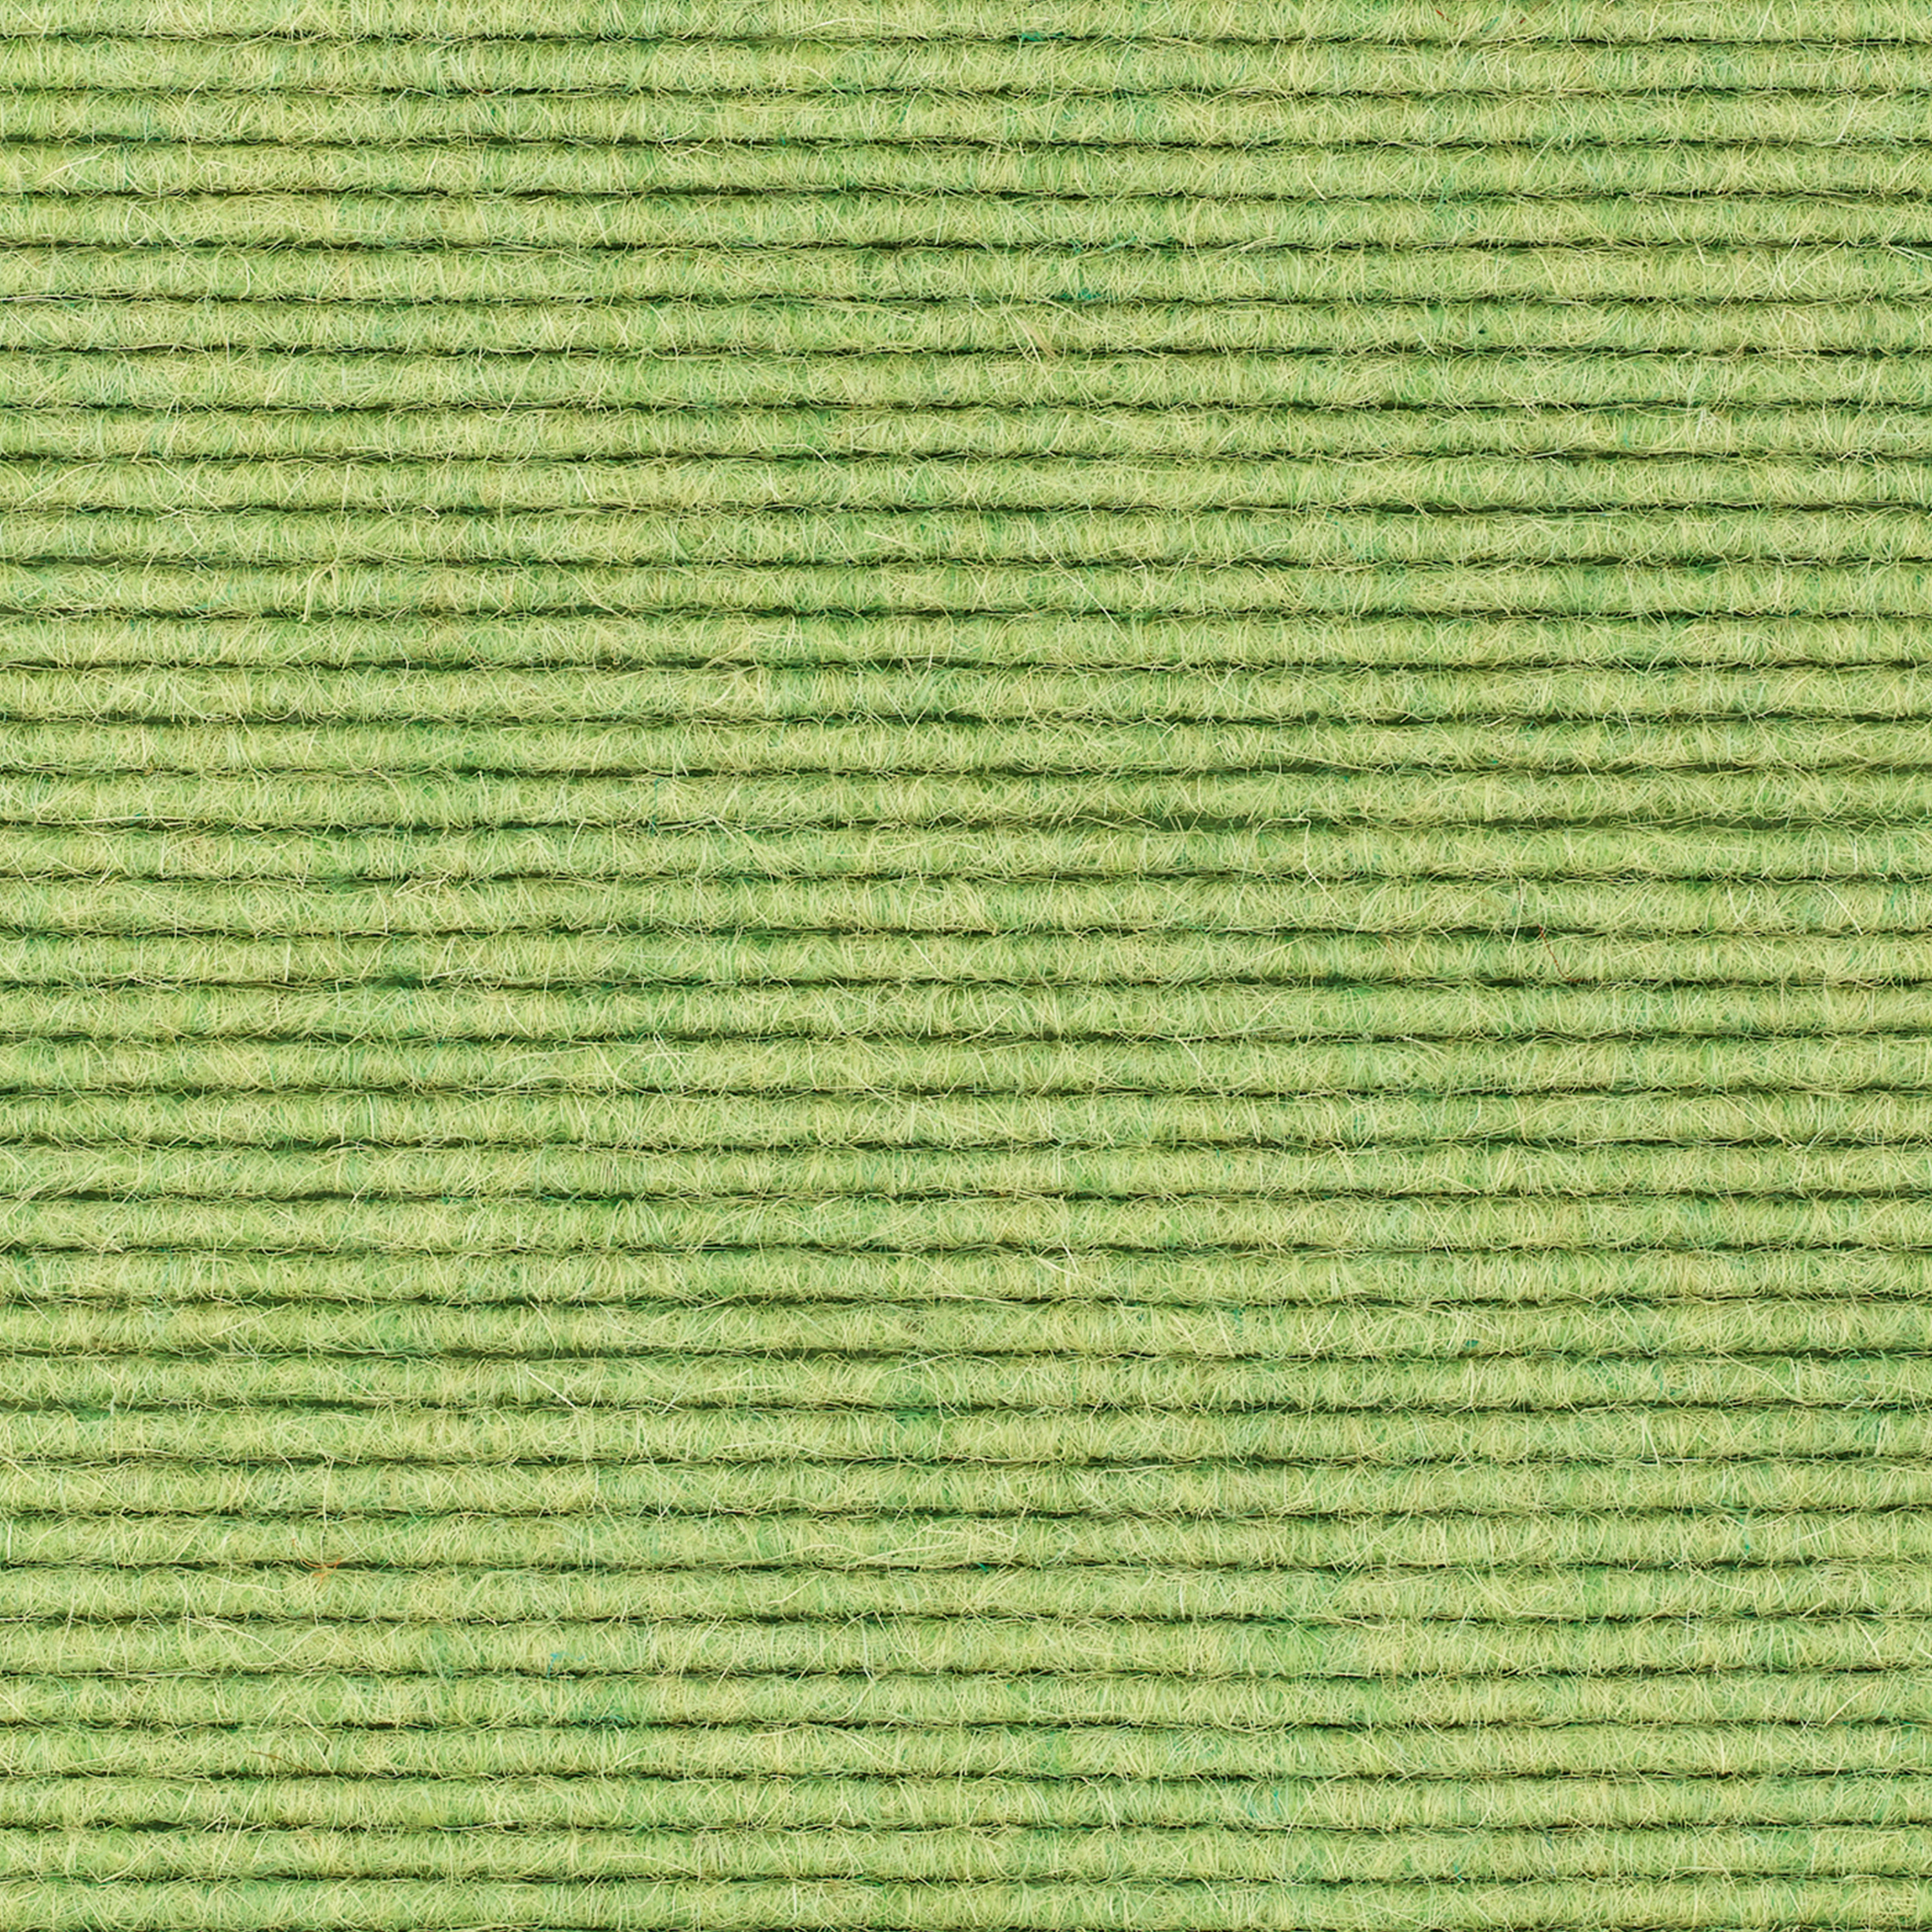 tretford-Teppich 'Wasabi (622)', 3 x 2 m, gekettelt